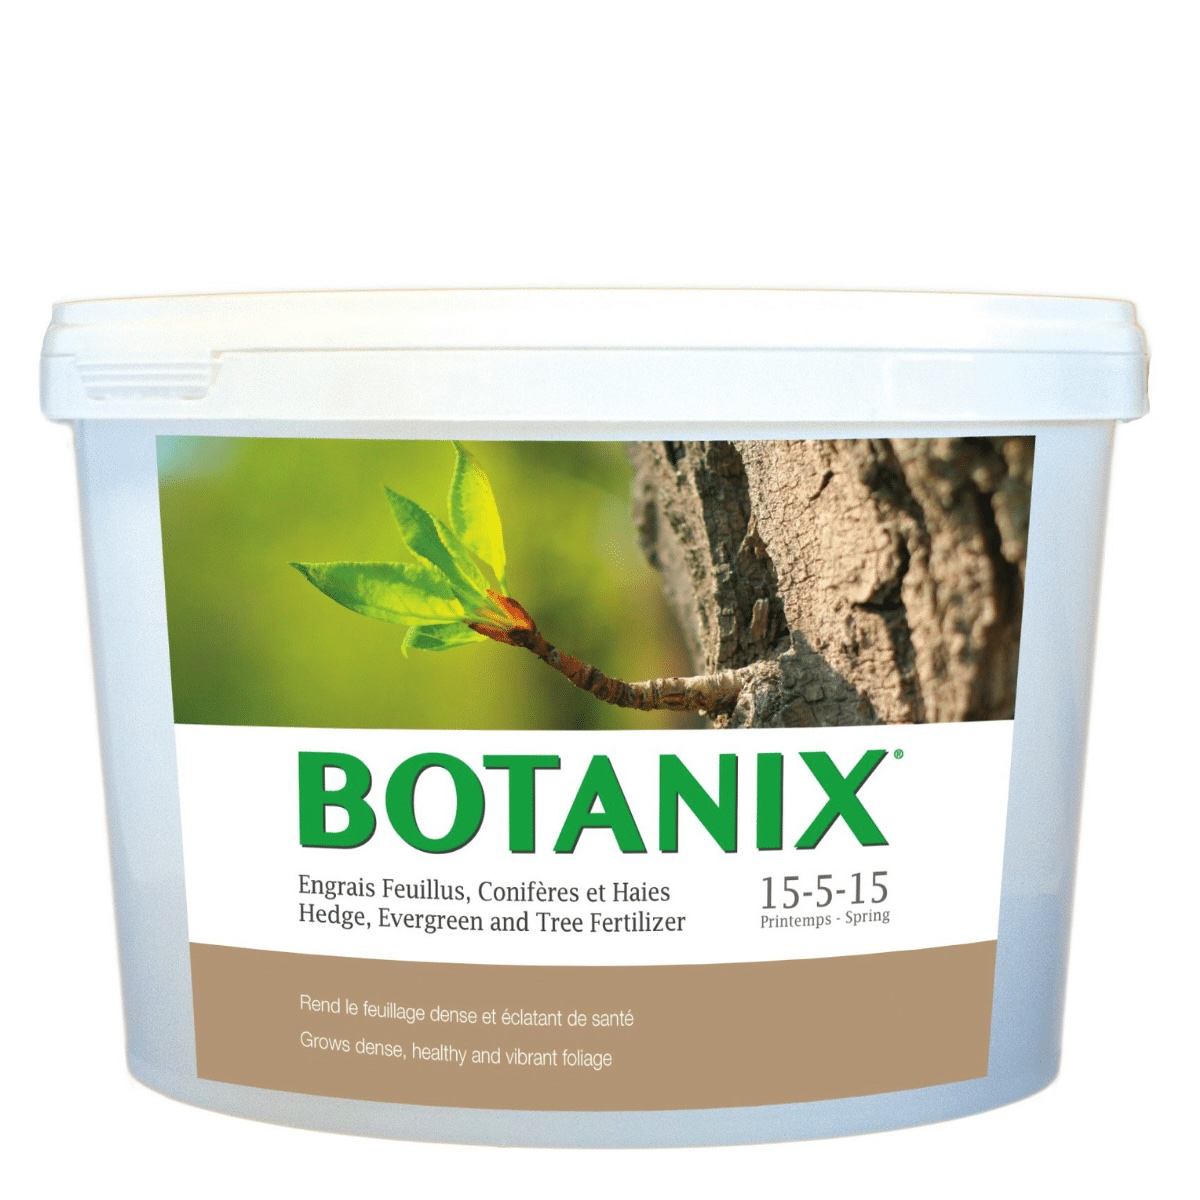  L'engrais BOTANIX pour feuillus, conifères et haies 15-5-15 est conçu spécifiquement pour les arbres et arbustes.